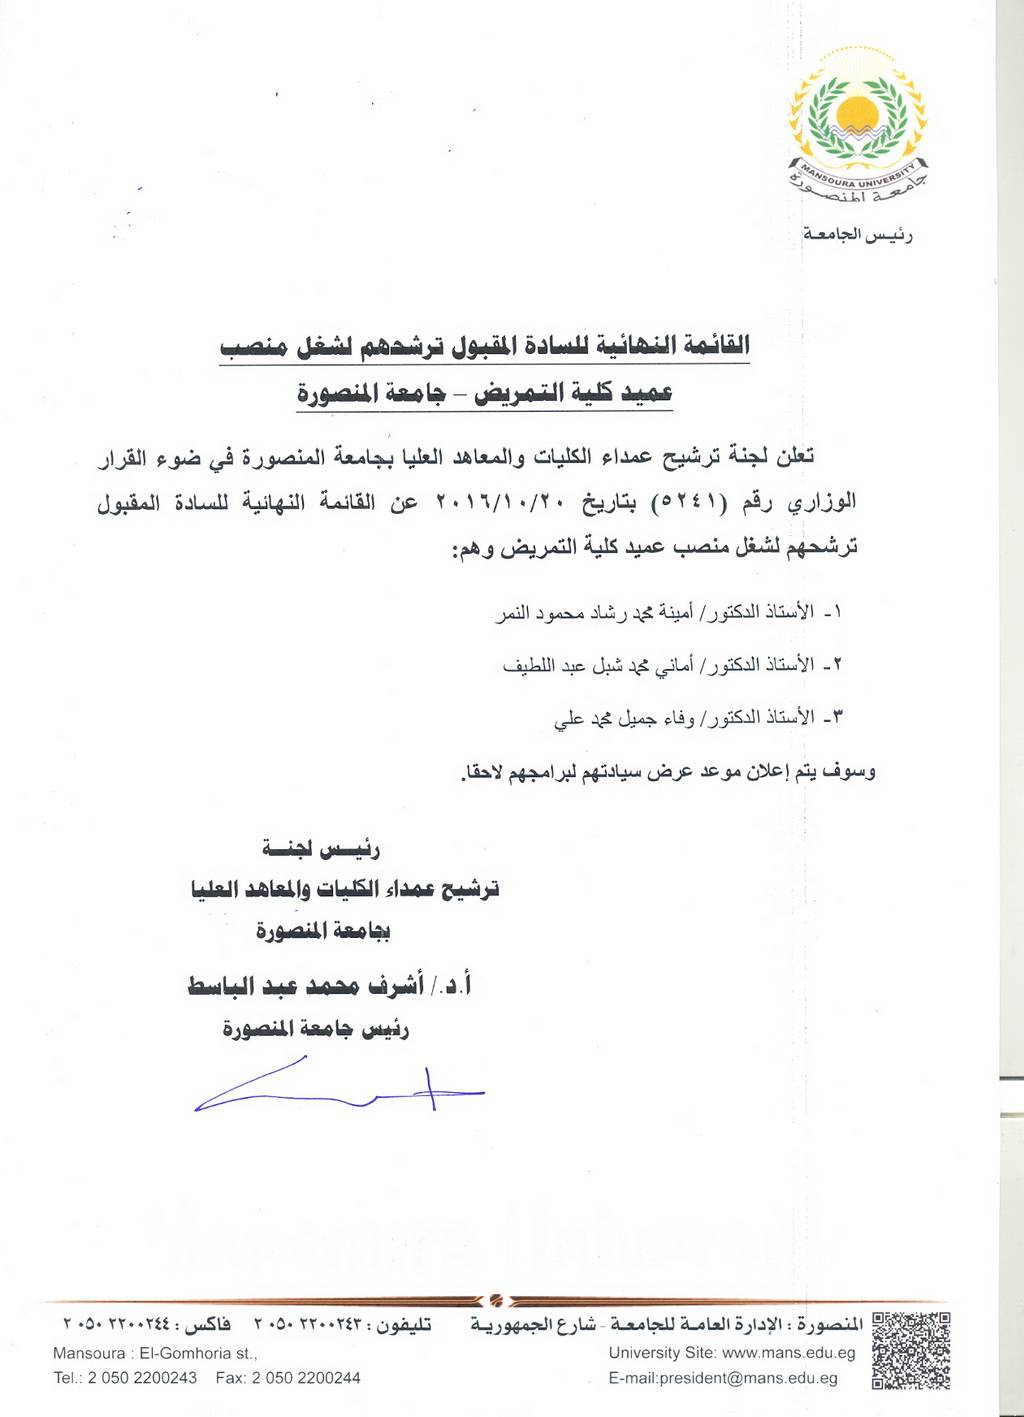 القائمة النهائية للسادة المقبول ترشحهم لشغل منصب عميد كلية التمريض - جامعة المنصورة